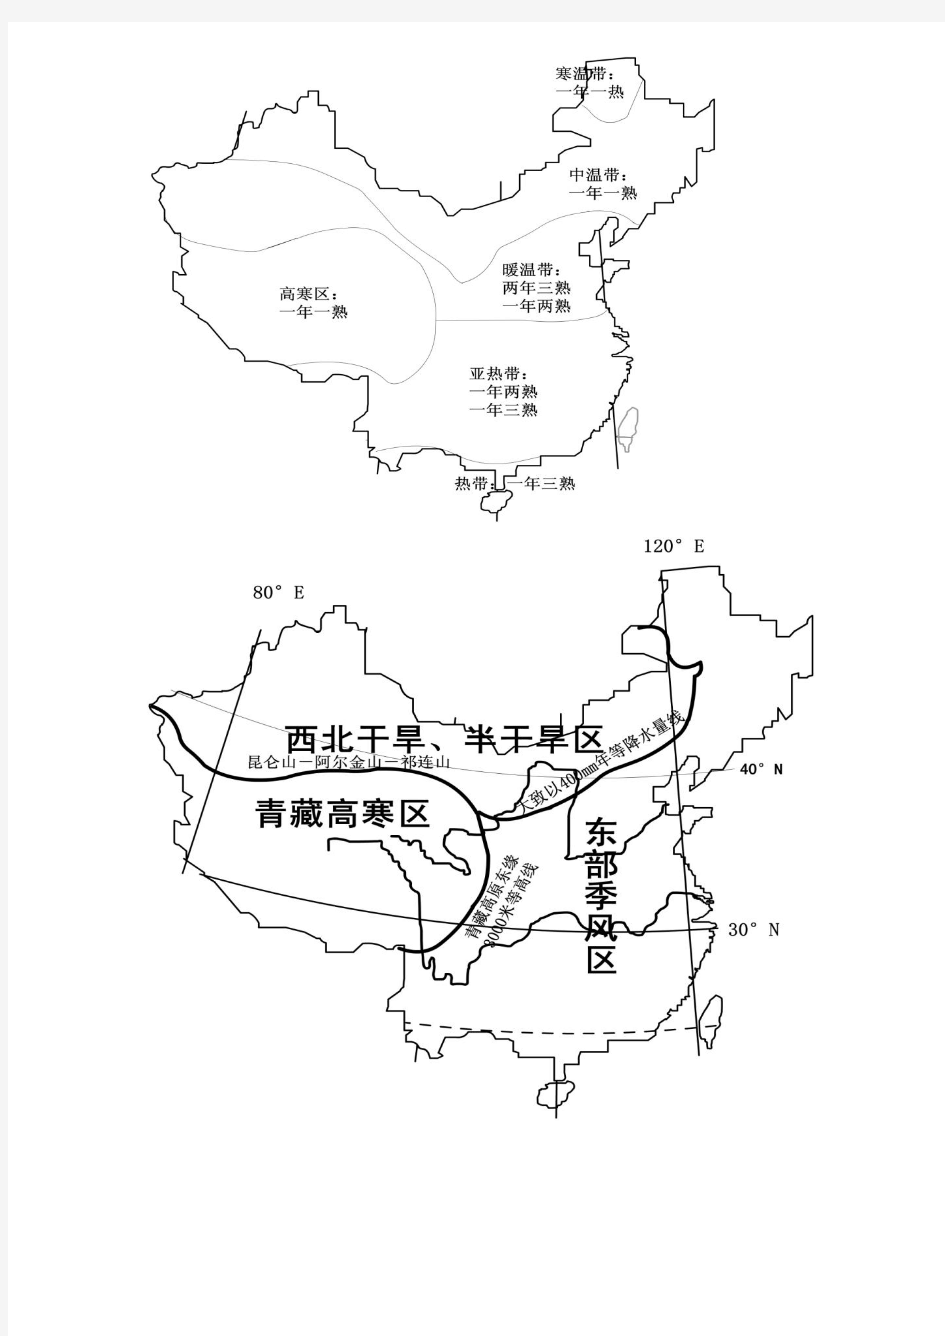 中国农业资料整理(地理)